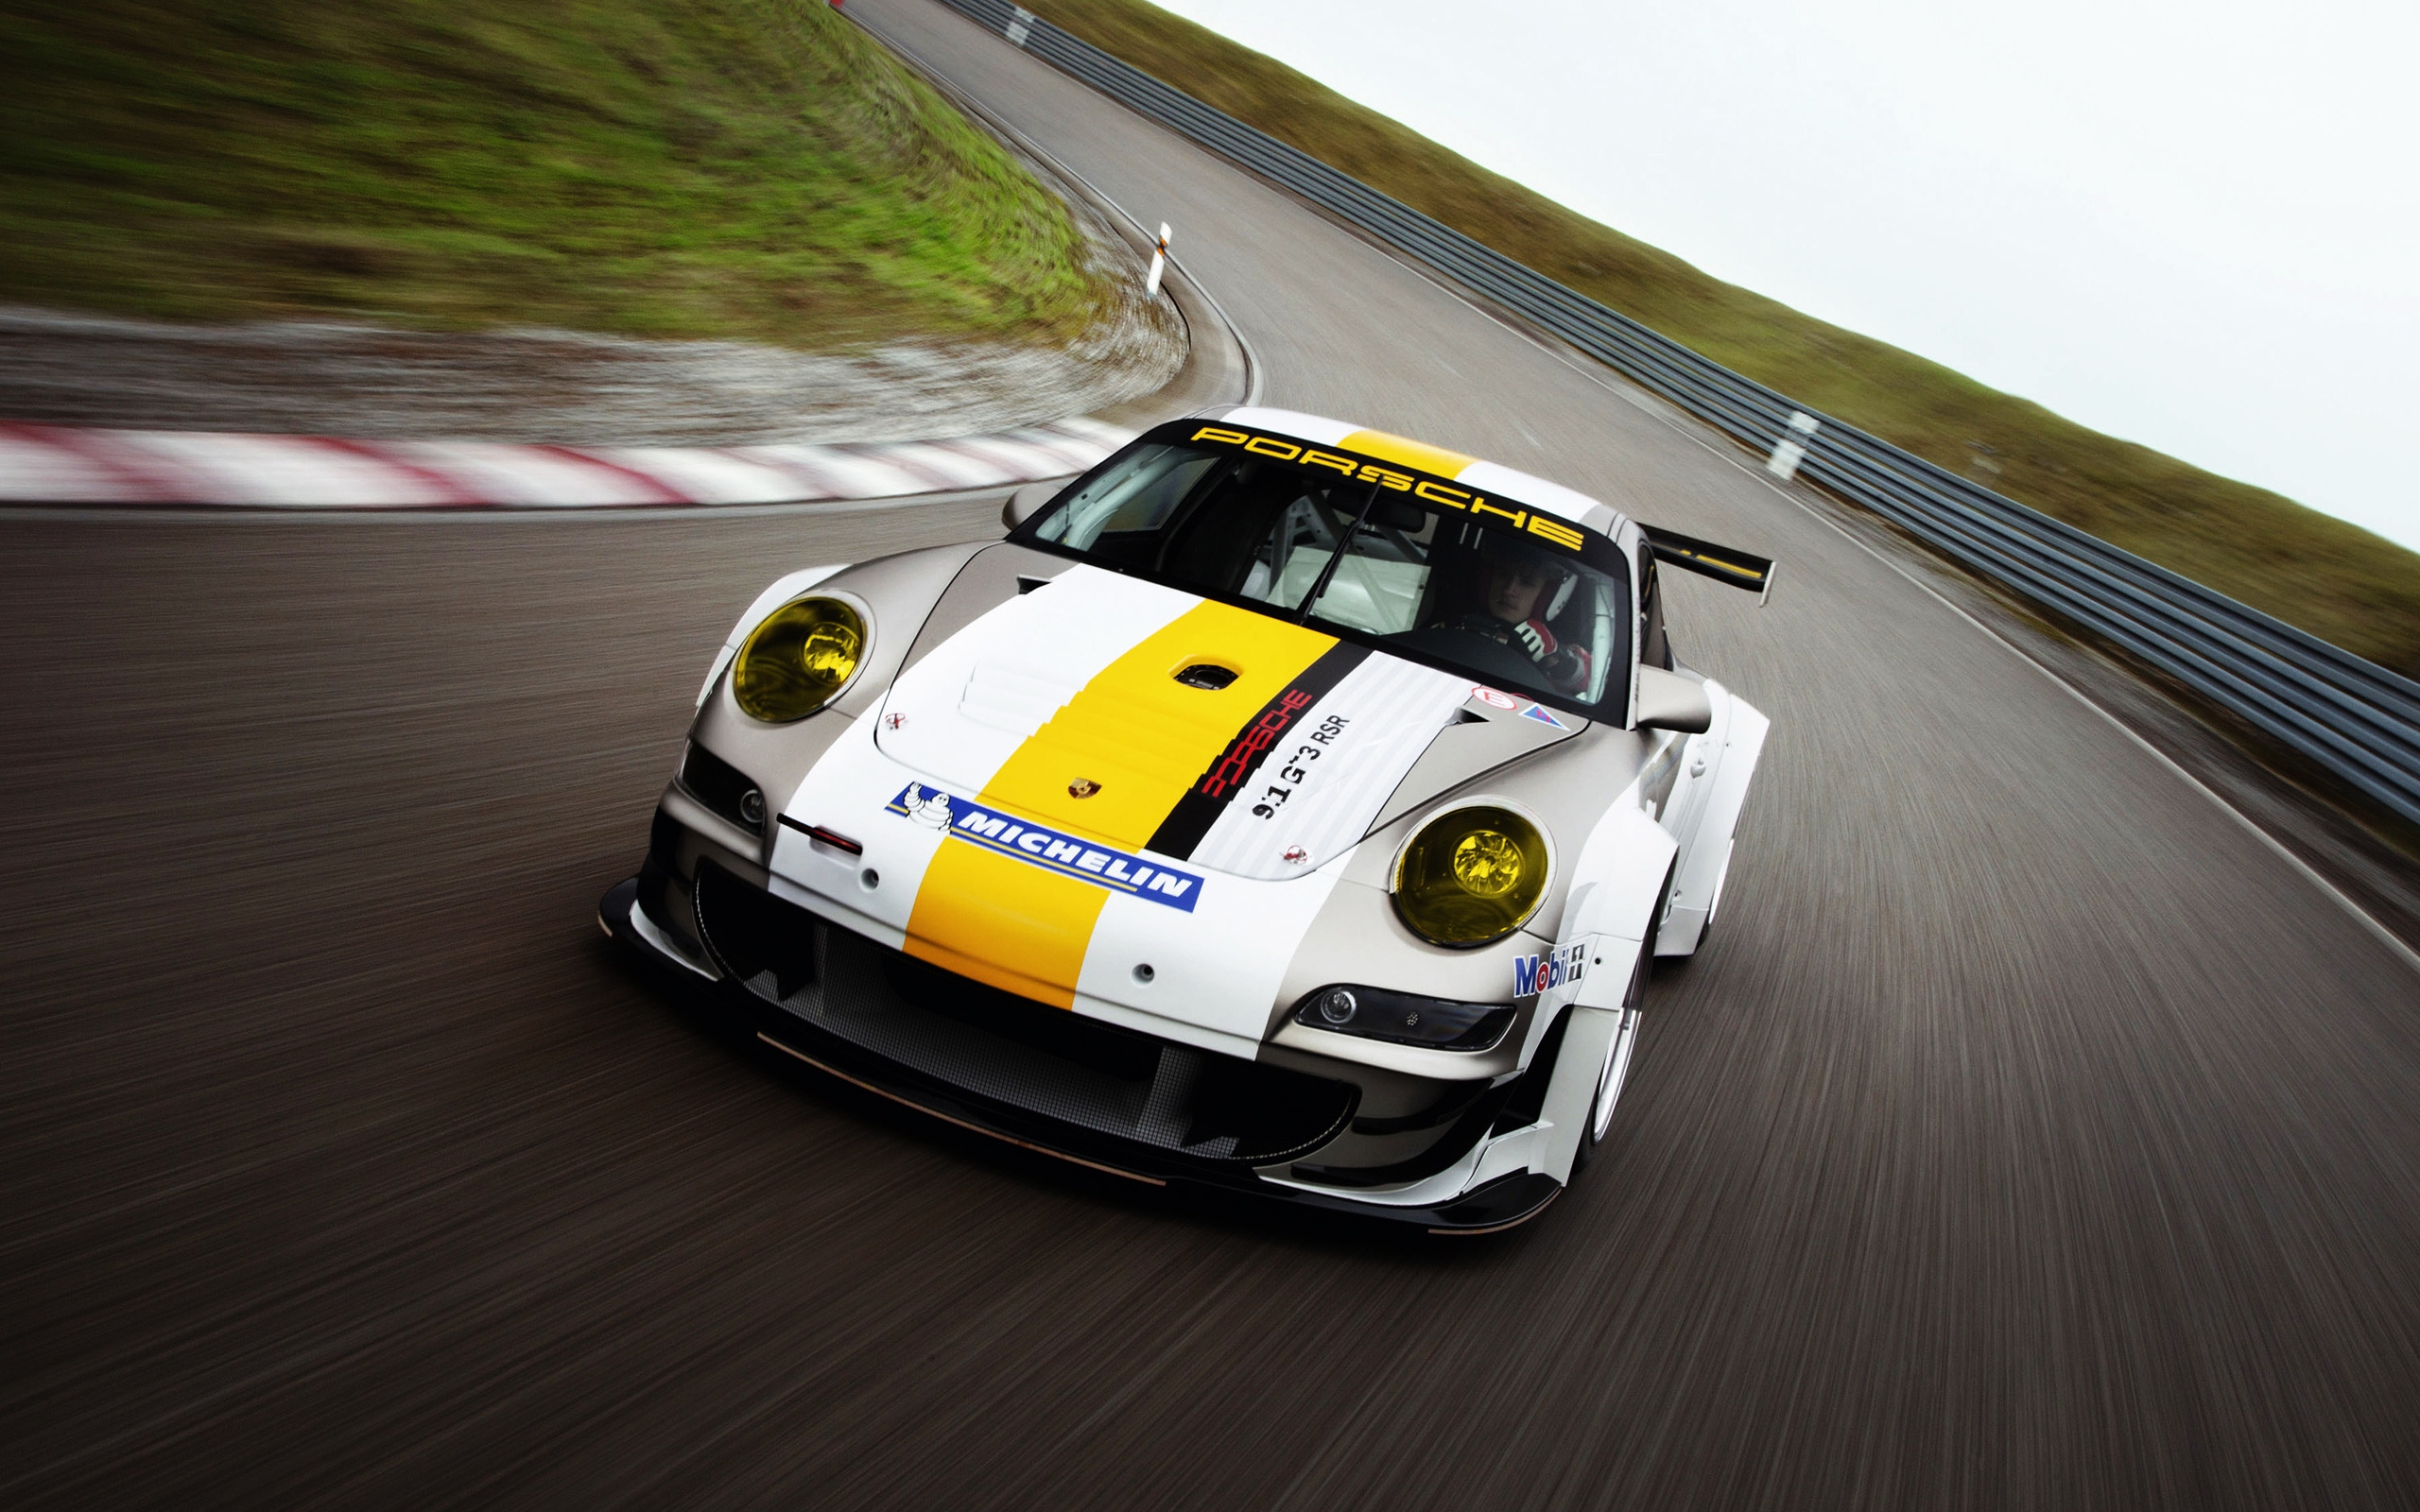 Porsche 911 GT3 RSR for 2560 x 1600 widescreen resolution